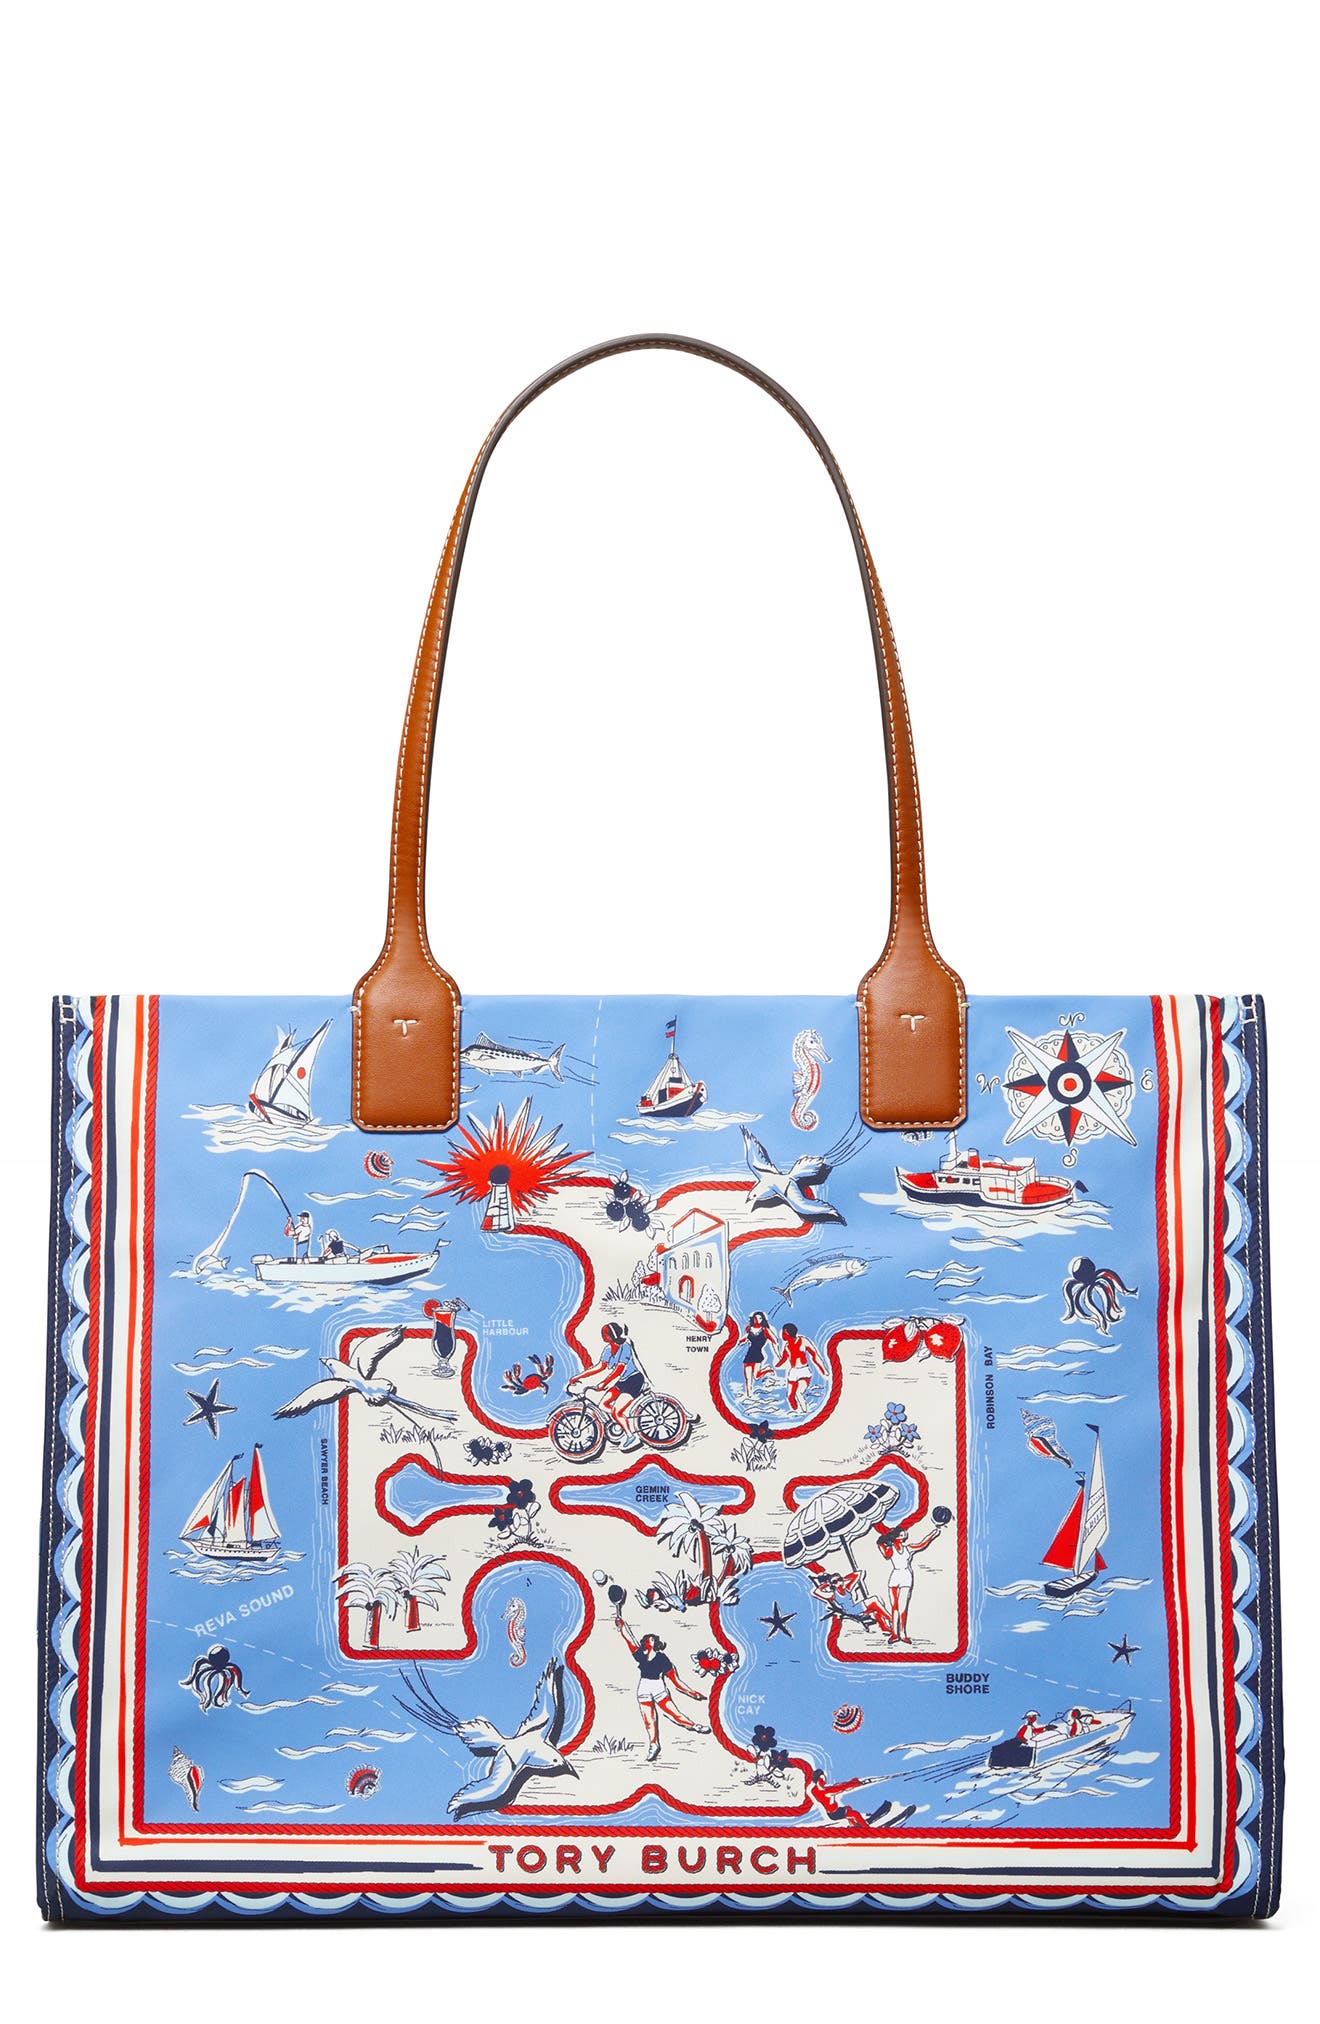 Queen bee handbag perfect gift luxury bag gg inspired designer bag Leopard  Boxy Satchel Bag